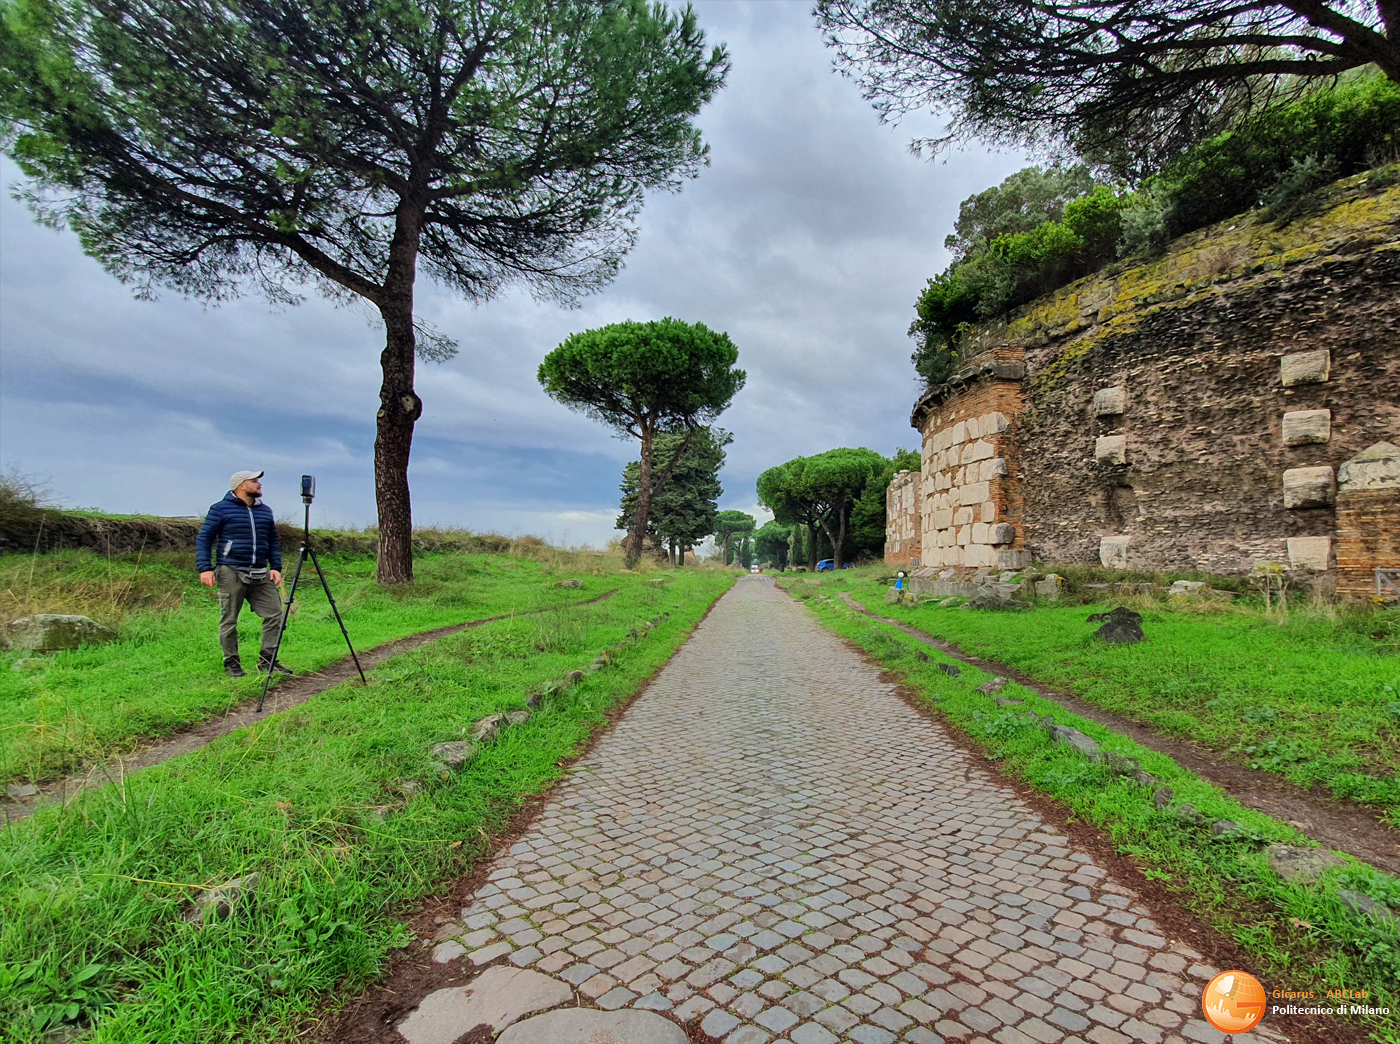 Parco Archeologico dell’Appia Antica “Regina Viarum”